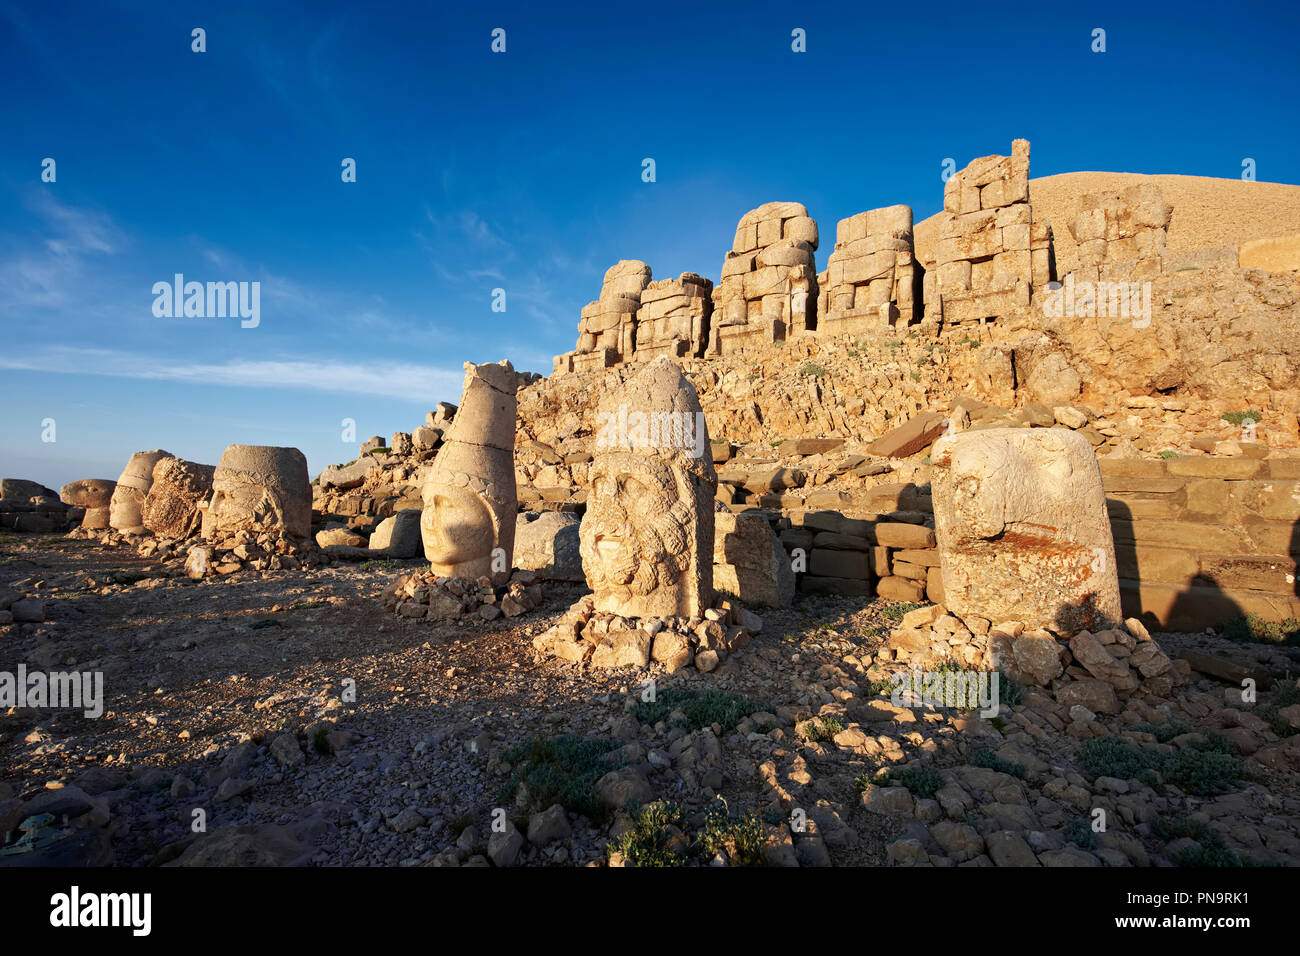 Fotos und Bilder von den Statuen des Rund um das Grab von Kommagene König Antochus 1 auf dem Gipfel des Berges Nemrut, Türkei. Stockfotos Foto- und Kunstdrucke. Stockfoto